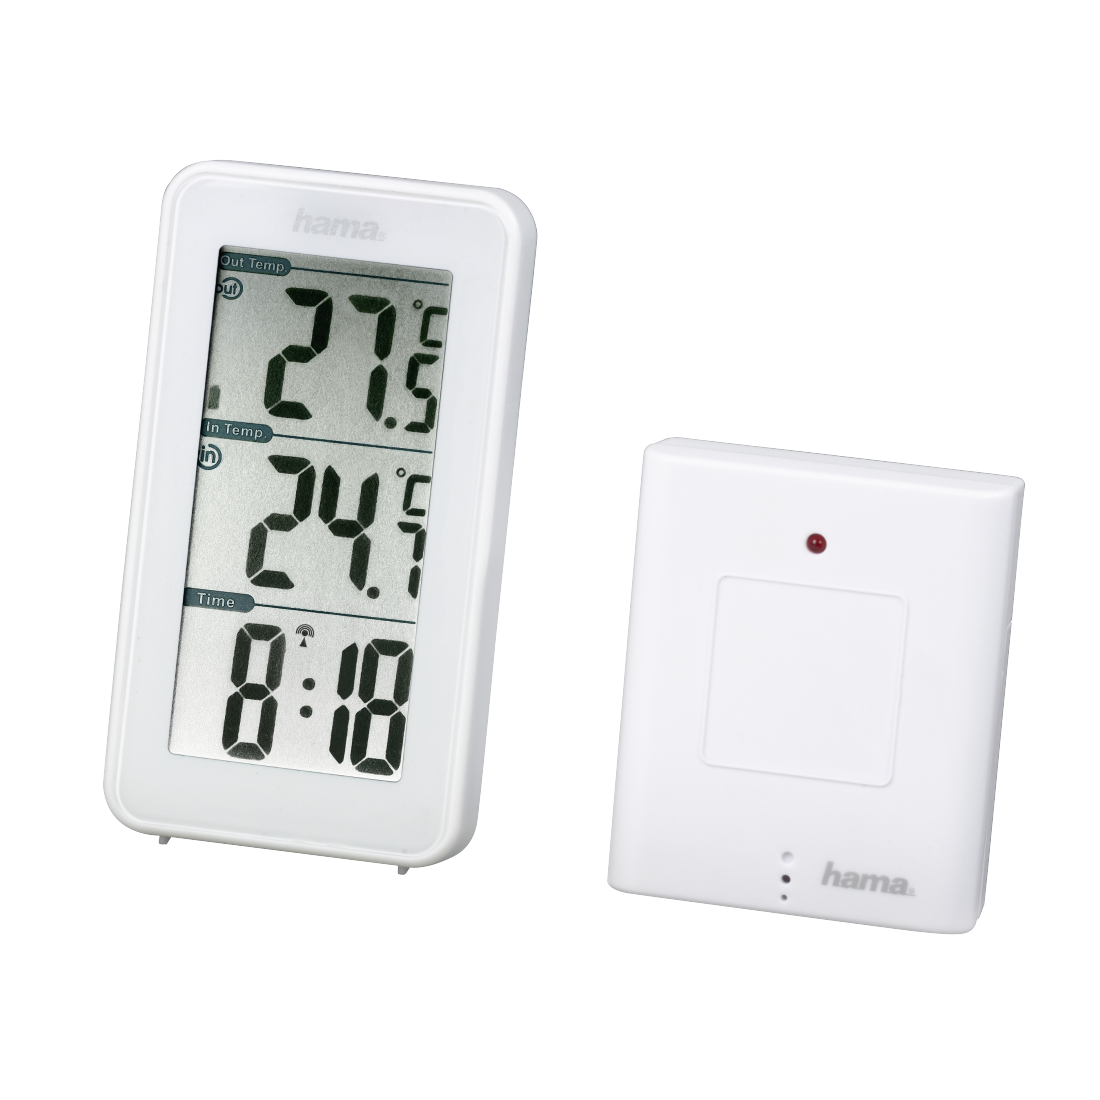 Hama EWS-152 Produktfarbe: Weiß, Messfunktionen: Innen-Thermometer, Außen-Thermometer, Wetterstation Extremum Daten: The